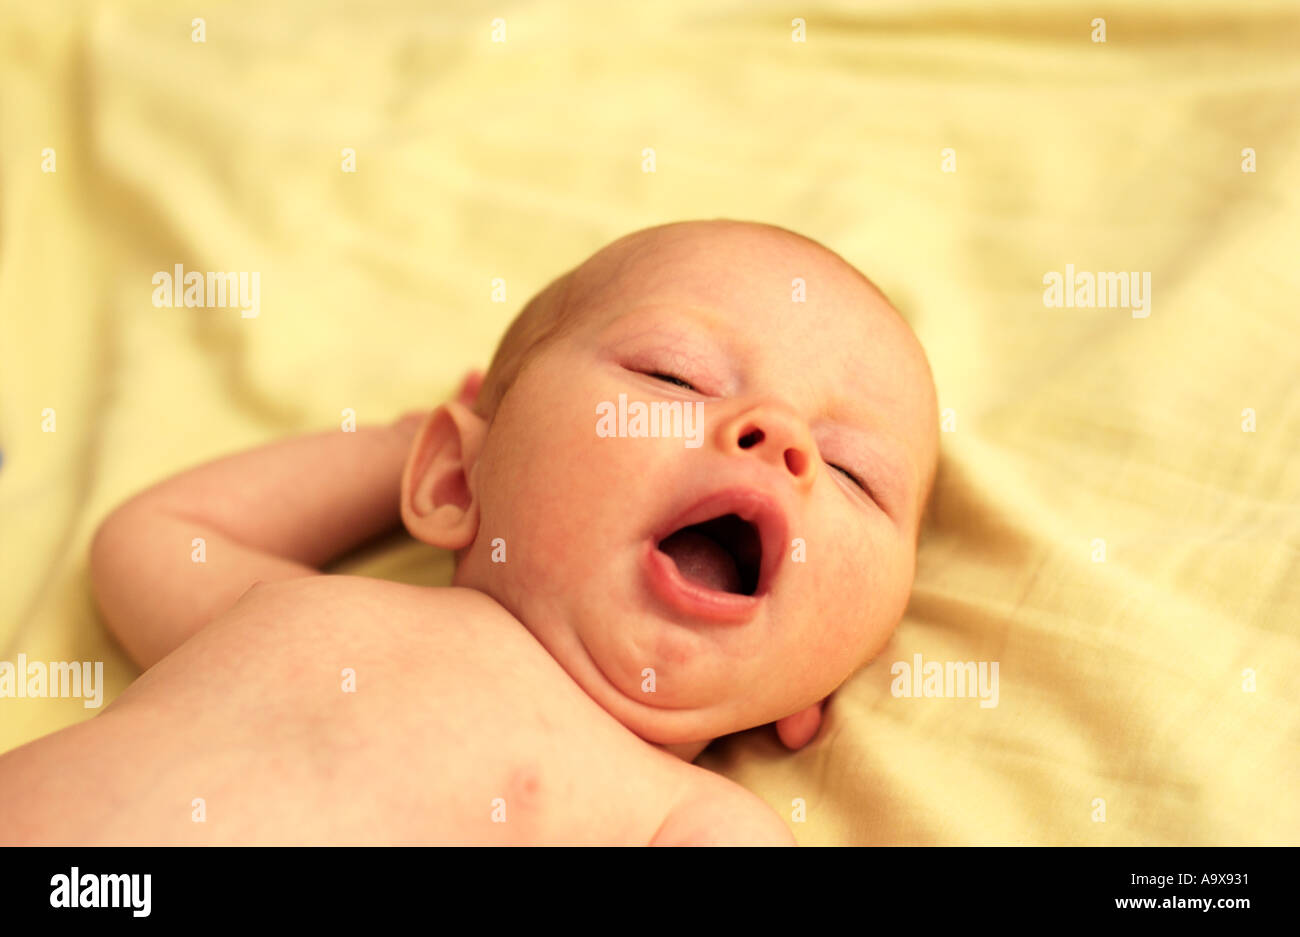 Baby lying on yellow blanket yawning Stock Photo